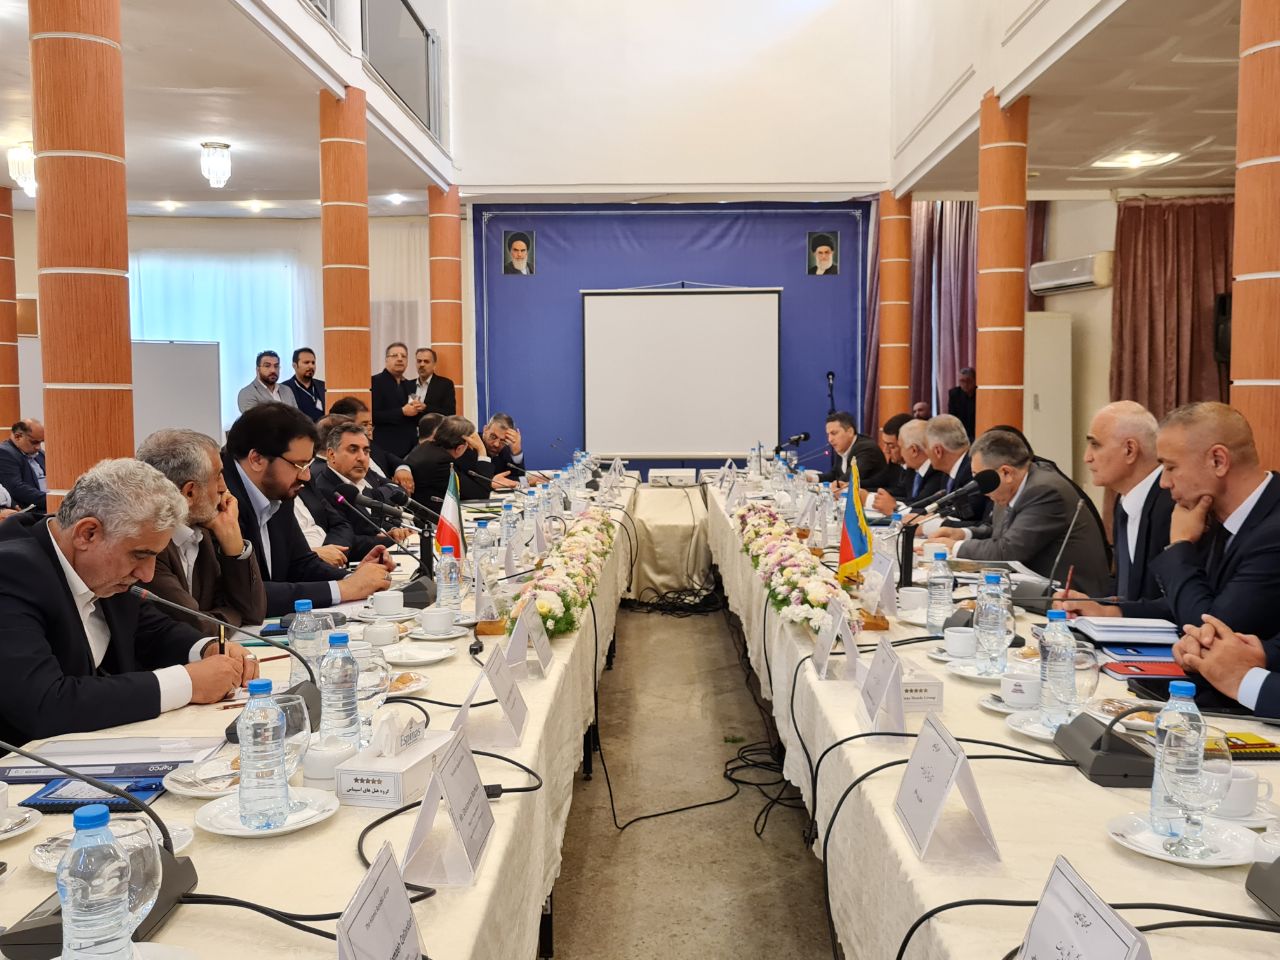 وزیر راه و شهرسازی: فرصت بی نظیر توسعه میان ایران و جمهوری آذربایجان فراهم است